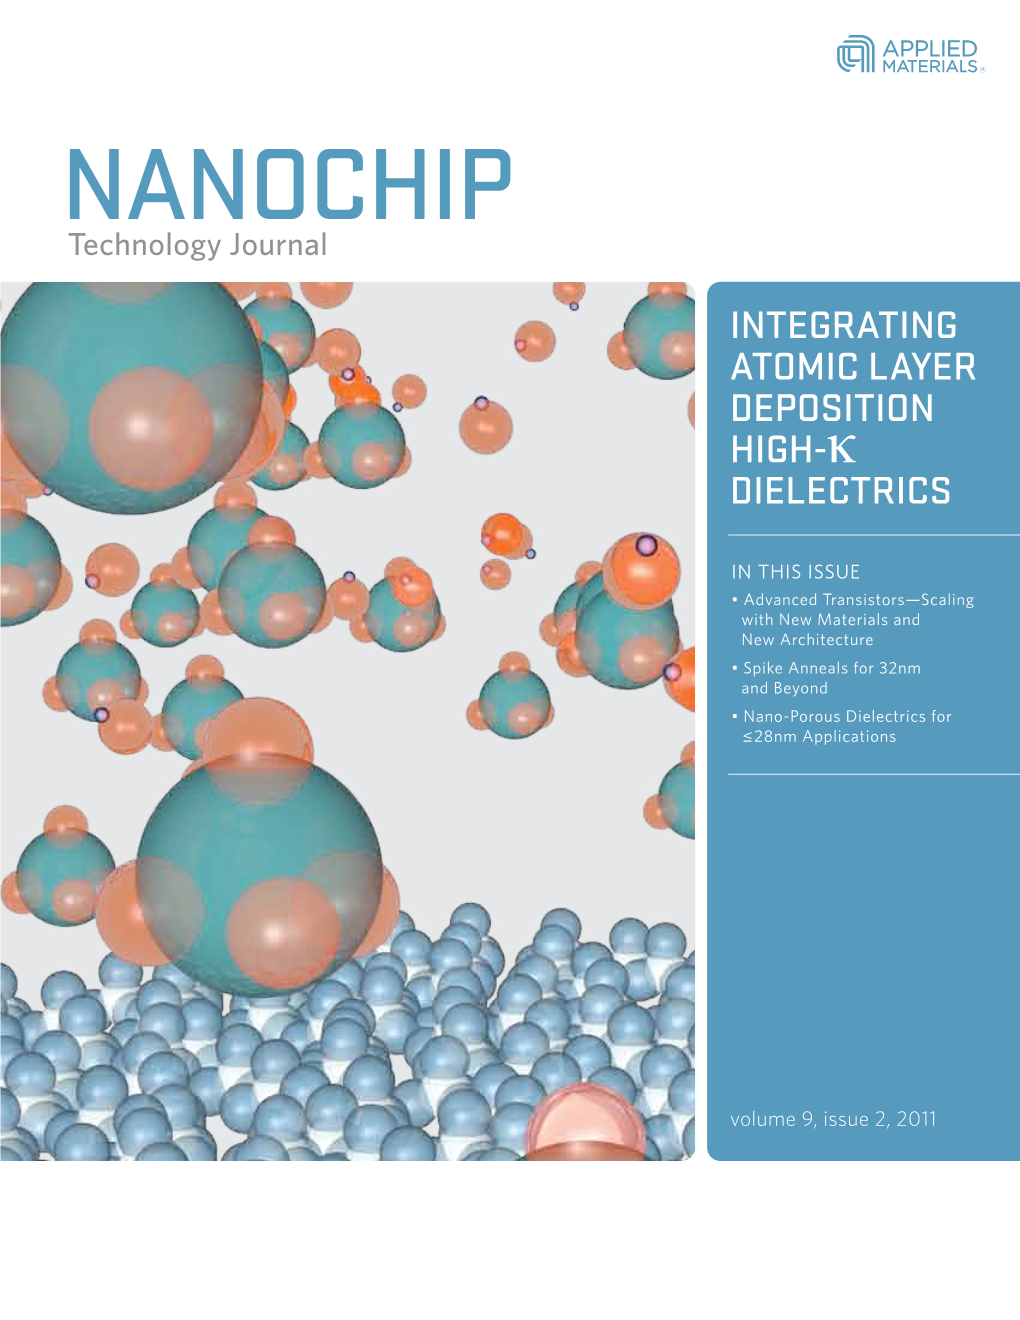 NANOCHIP Technology Journal